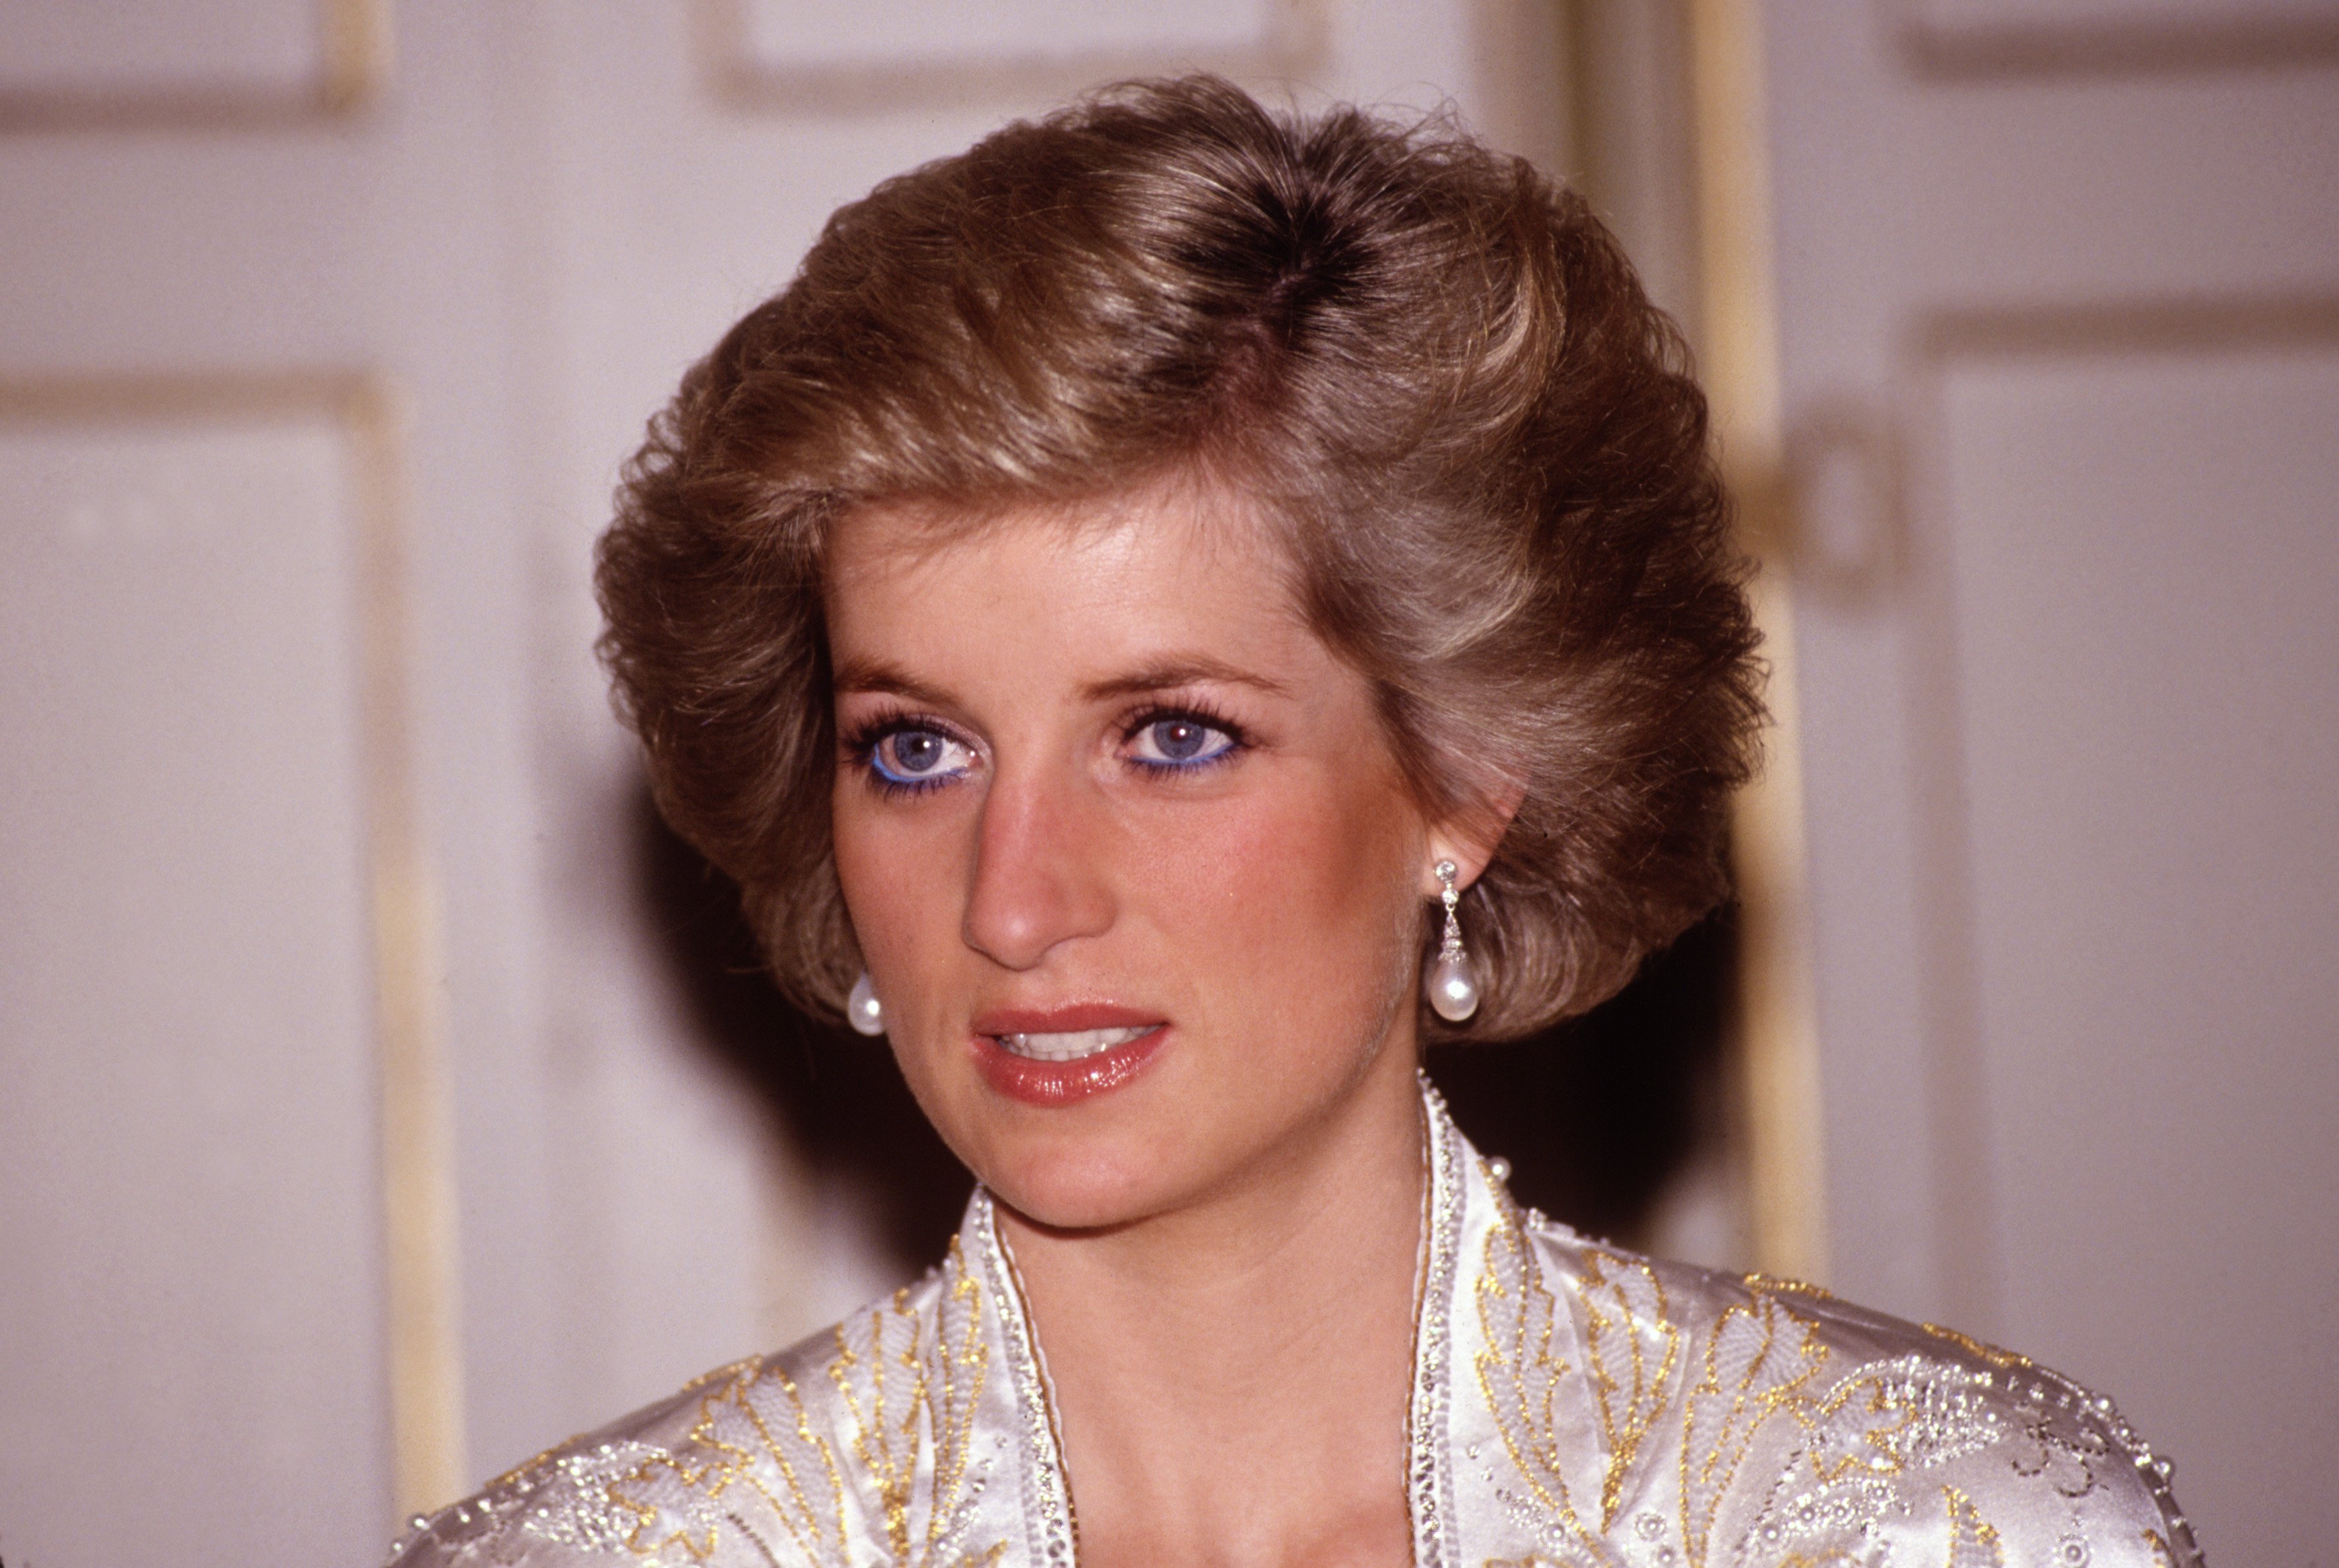 Diana, princesse de Galles, lors d'un dîner donné par le président Mitterrand en novembre 1988 au palais de l'Elysée à Paris, France, lors de la tournée royale de France. Diana portait une robe conçue par Victor Edelstein | Source : Getty Images